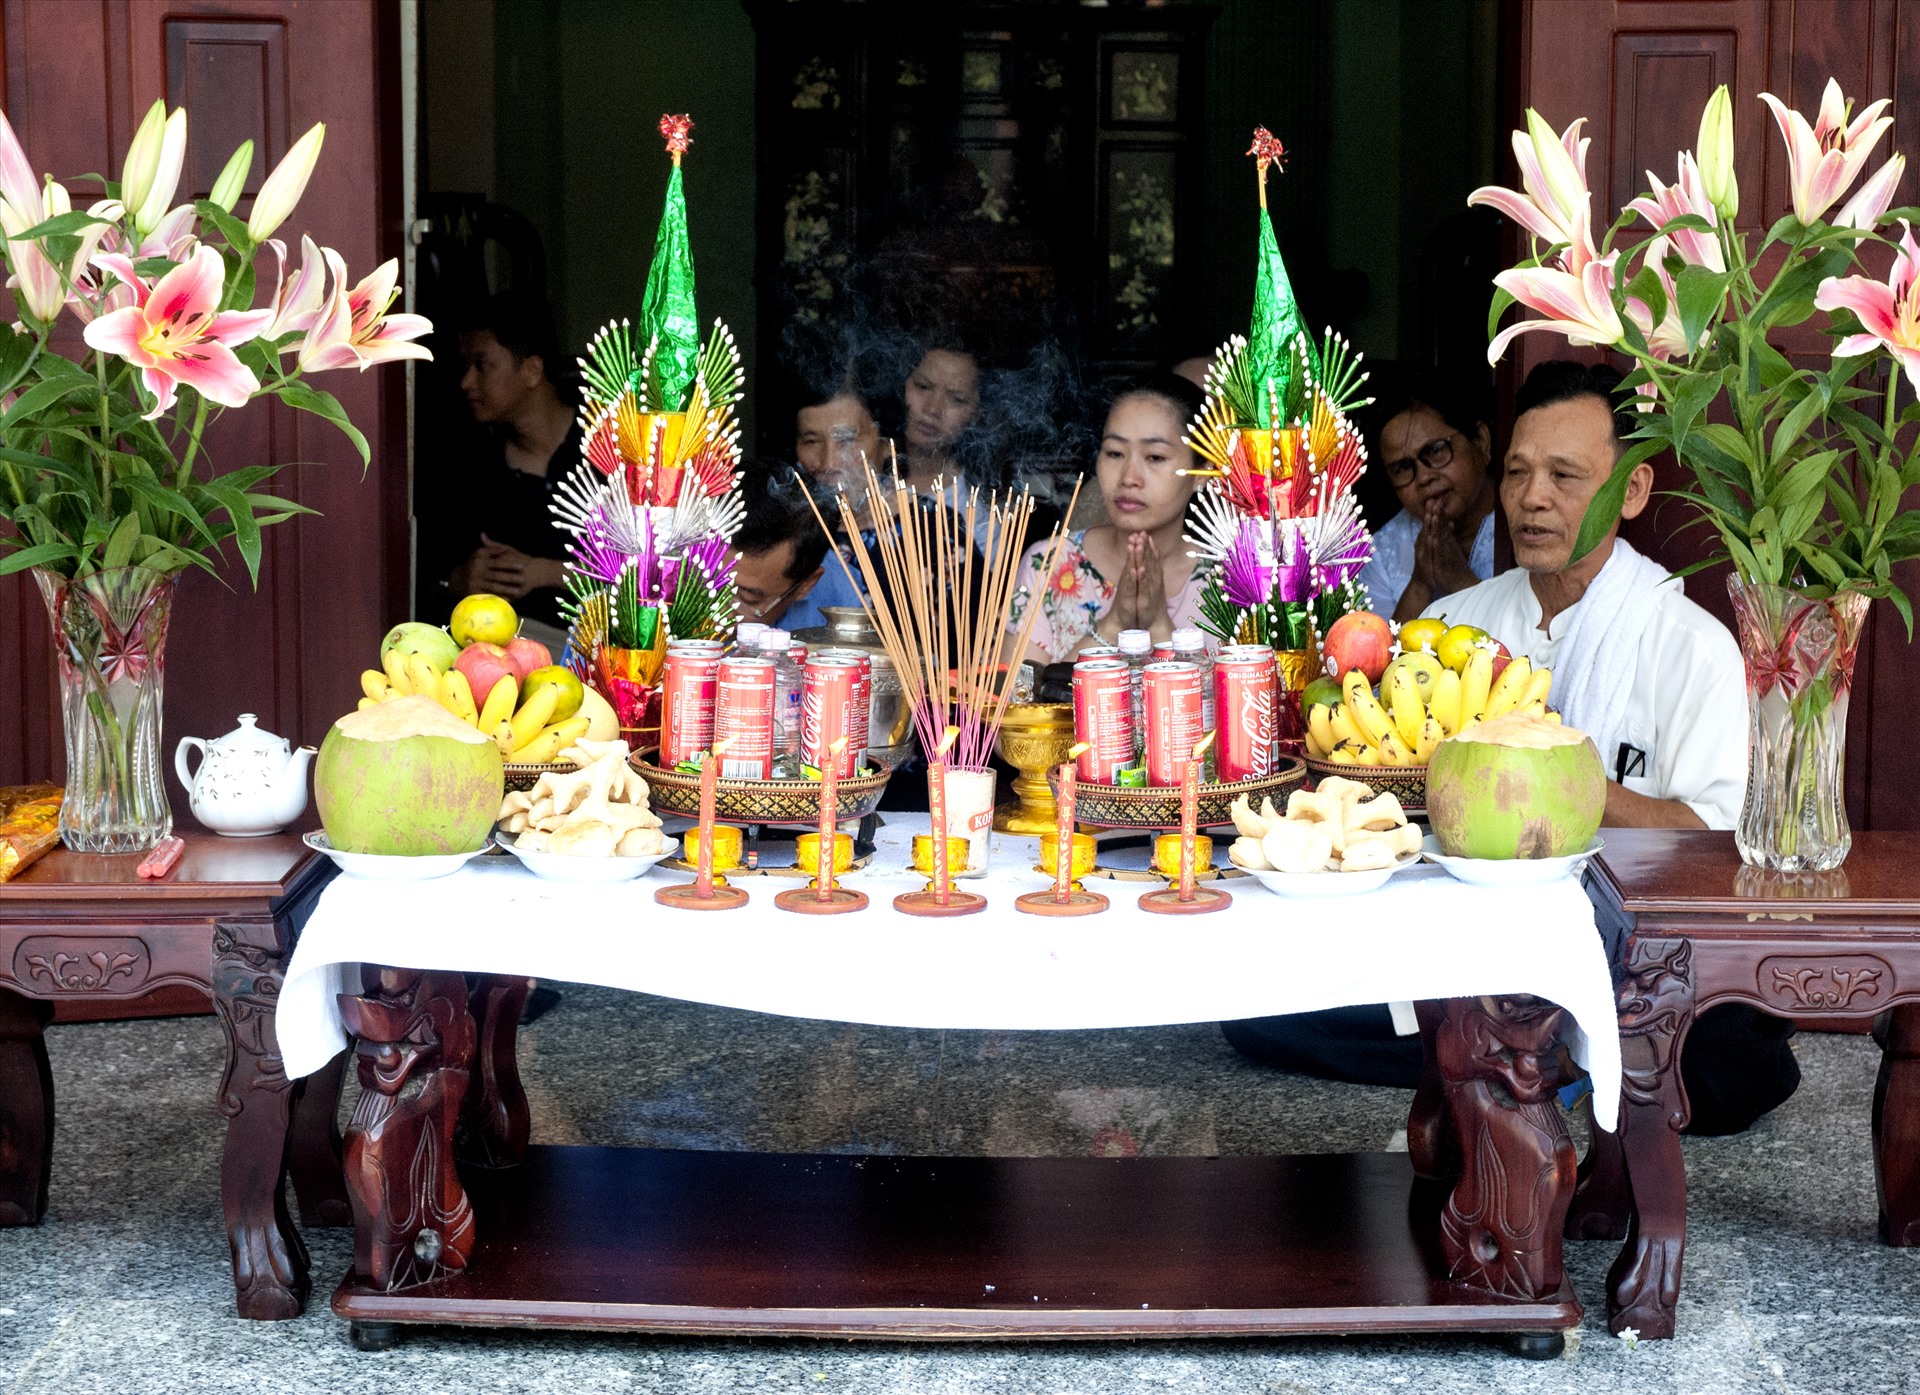 Lễ hội thường kéo dài trong 3 ngày liên tiếp. Ngày đầu tiên có tên: Maha Songkran (Chôl sangkran thmây). Mọi người làm lễ rước đại lịch, tắm gội, mặc quần áo đẹp, đội cỗ lên chùa. Ảnh: Lễ rước đại lịch của đồng bào Khmer ở tỉnh Sóc Trăng.